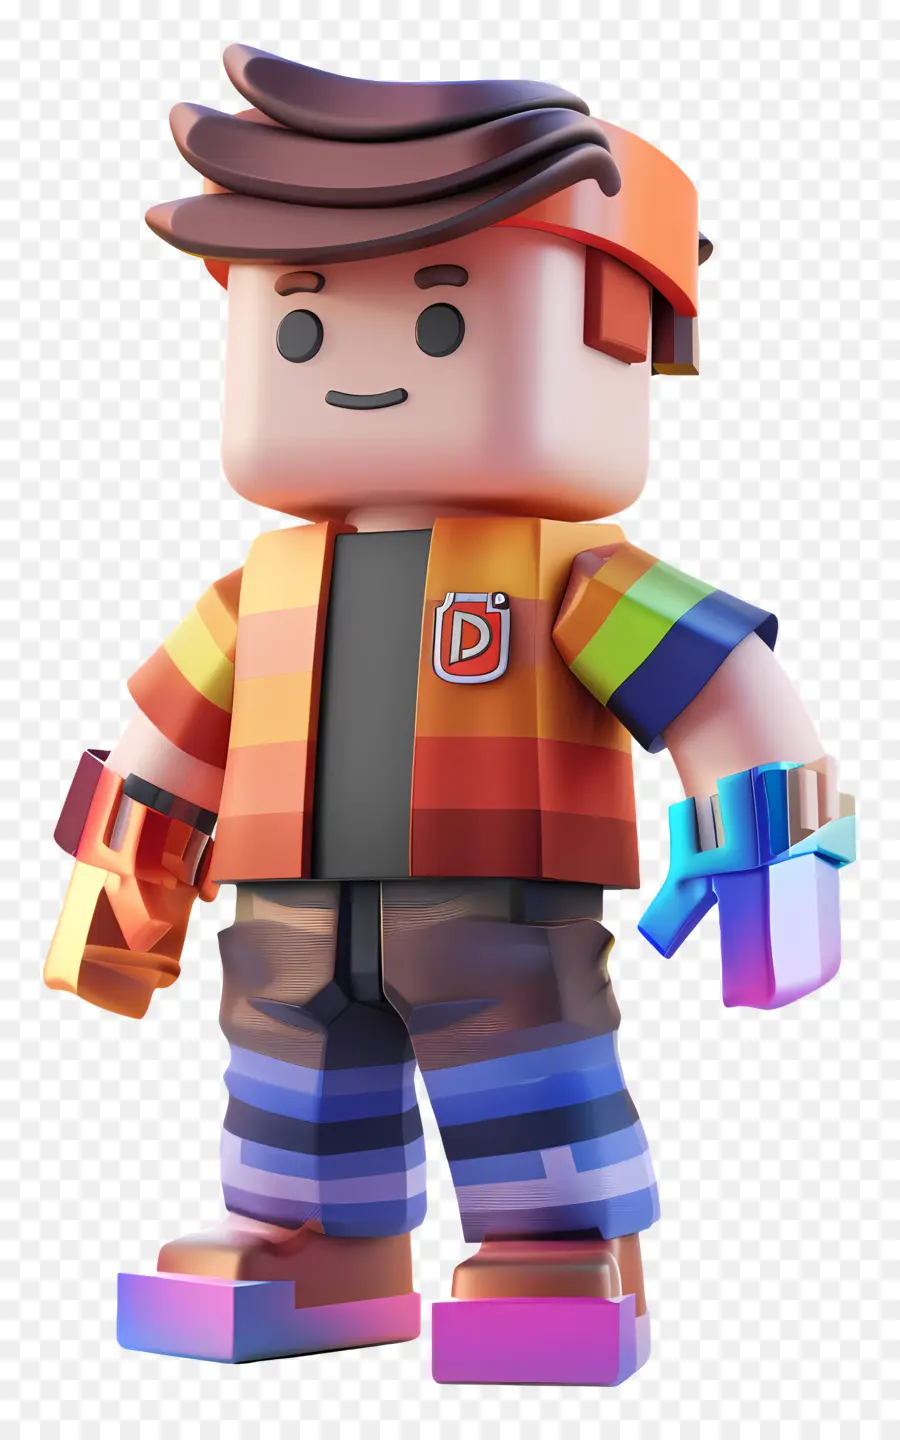 roblox boy lego mini figura colorato armatura - Persona lego colorata con barba, armatura, personale